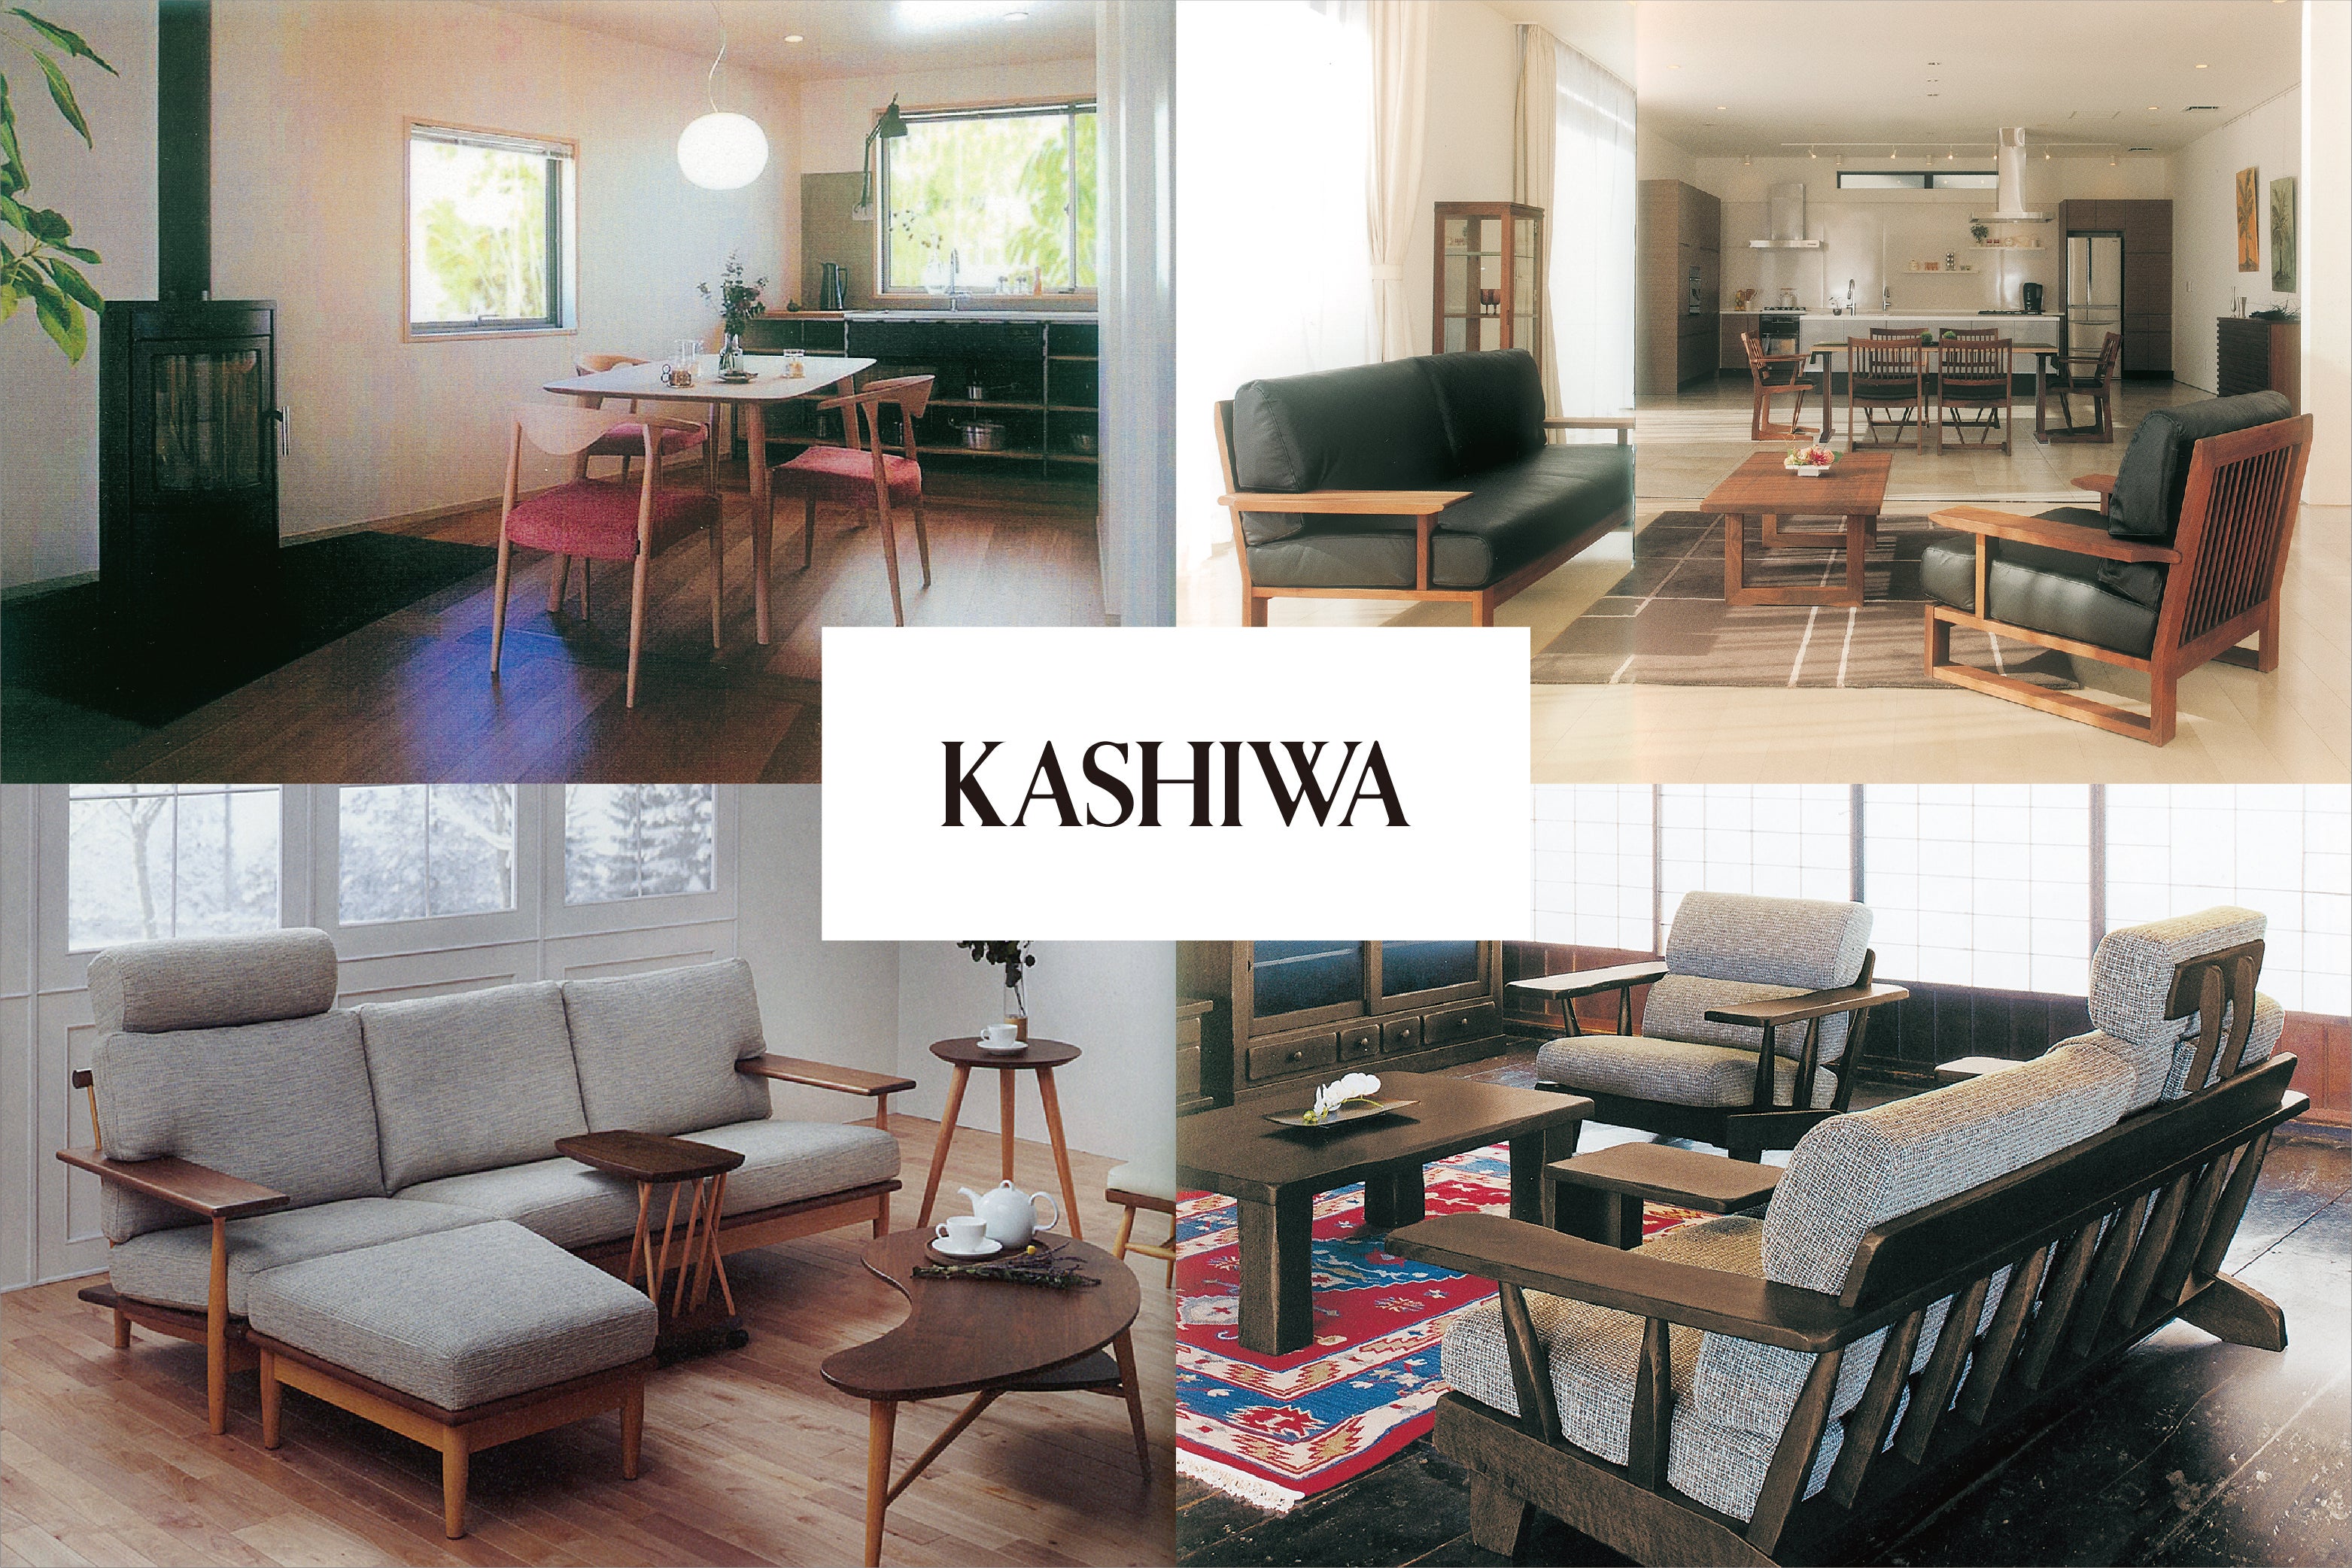 どこよりも美しい時間が生まれる生活空間のために、<KASHIWA>だからできるご提案